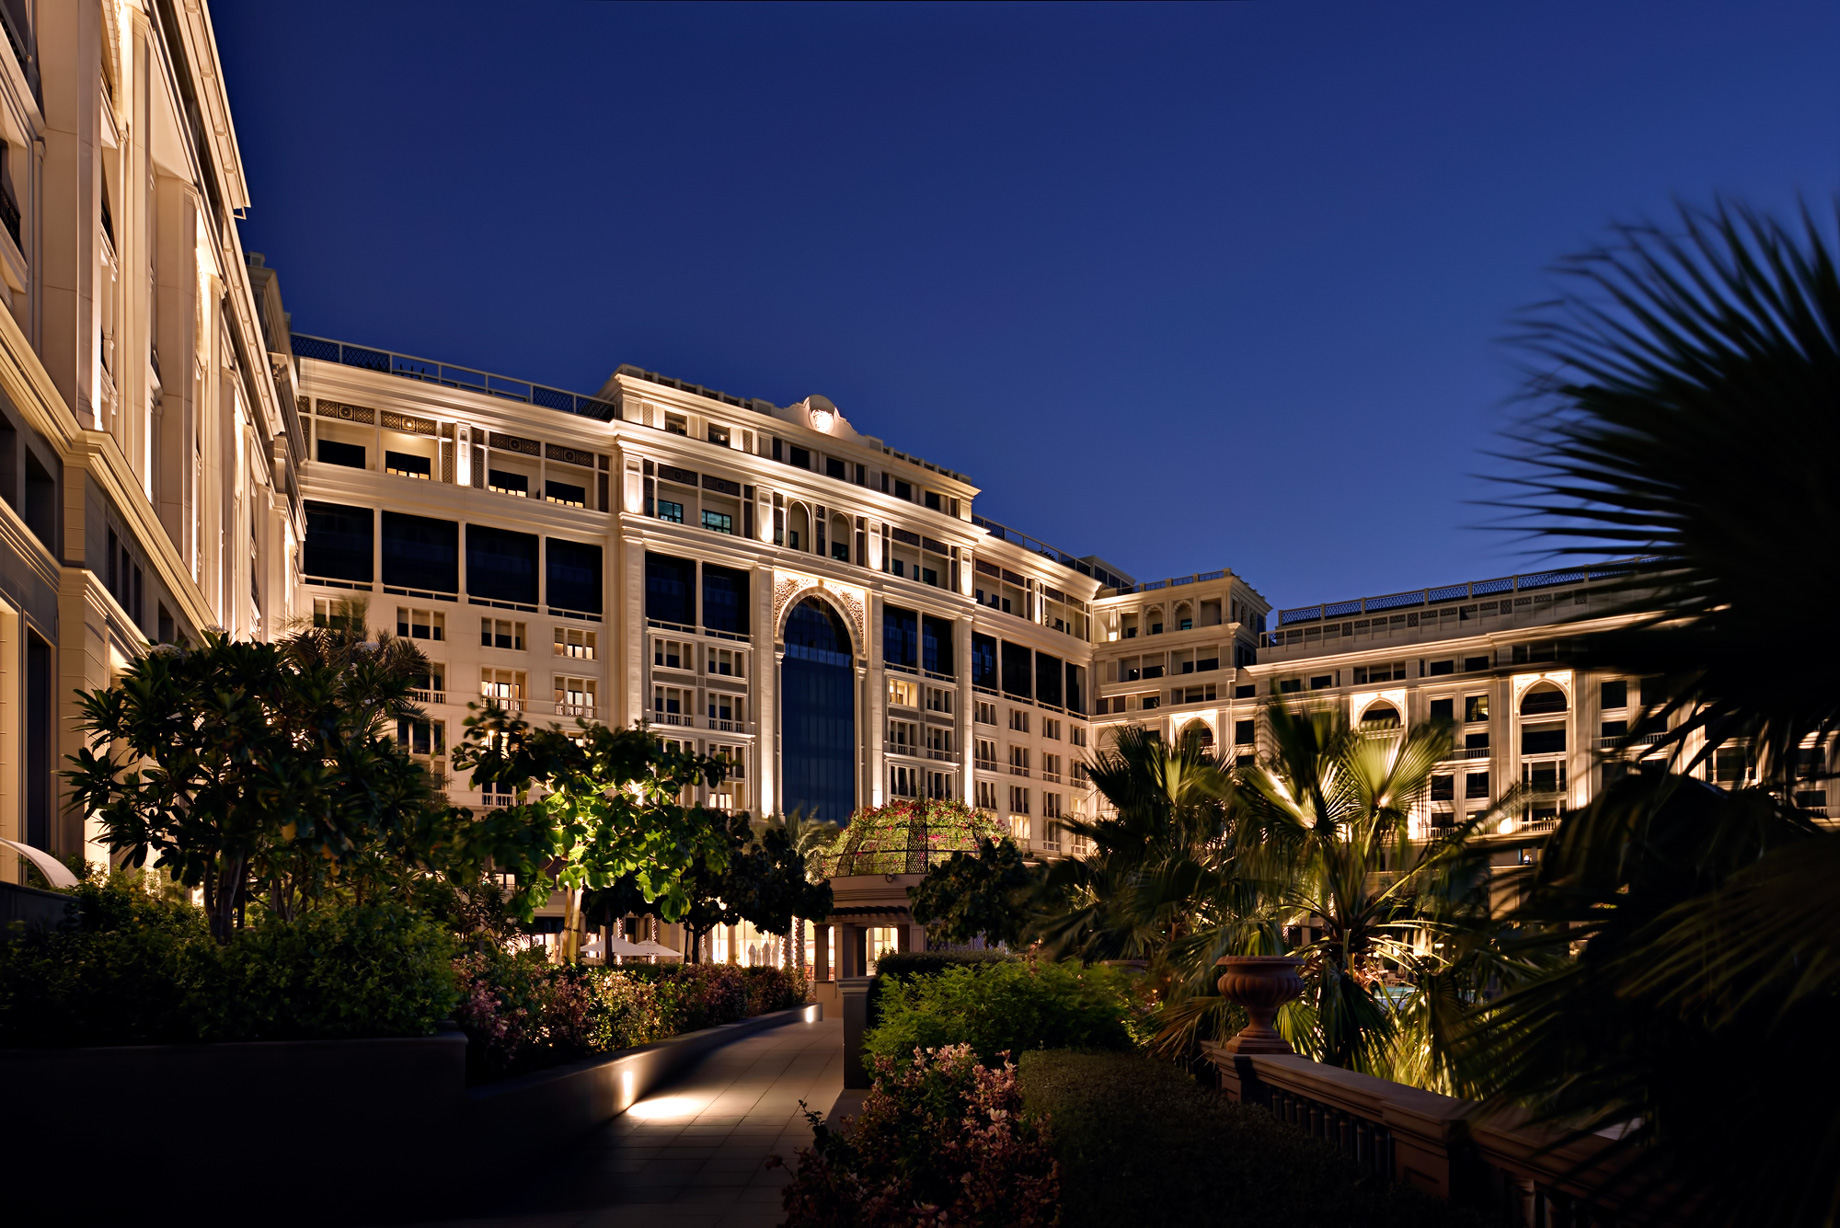 Palazzo Versace Dubai Hotel - Jaddaf Waterfront, Dubai, UAE - Exterior Night